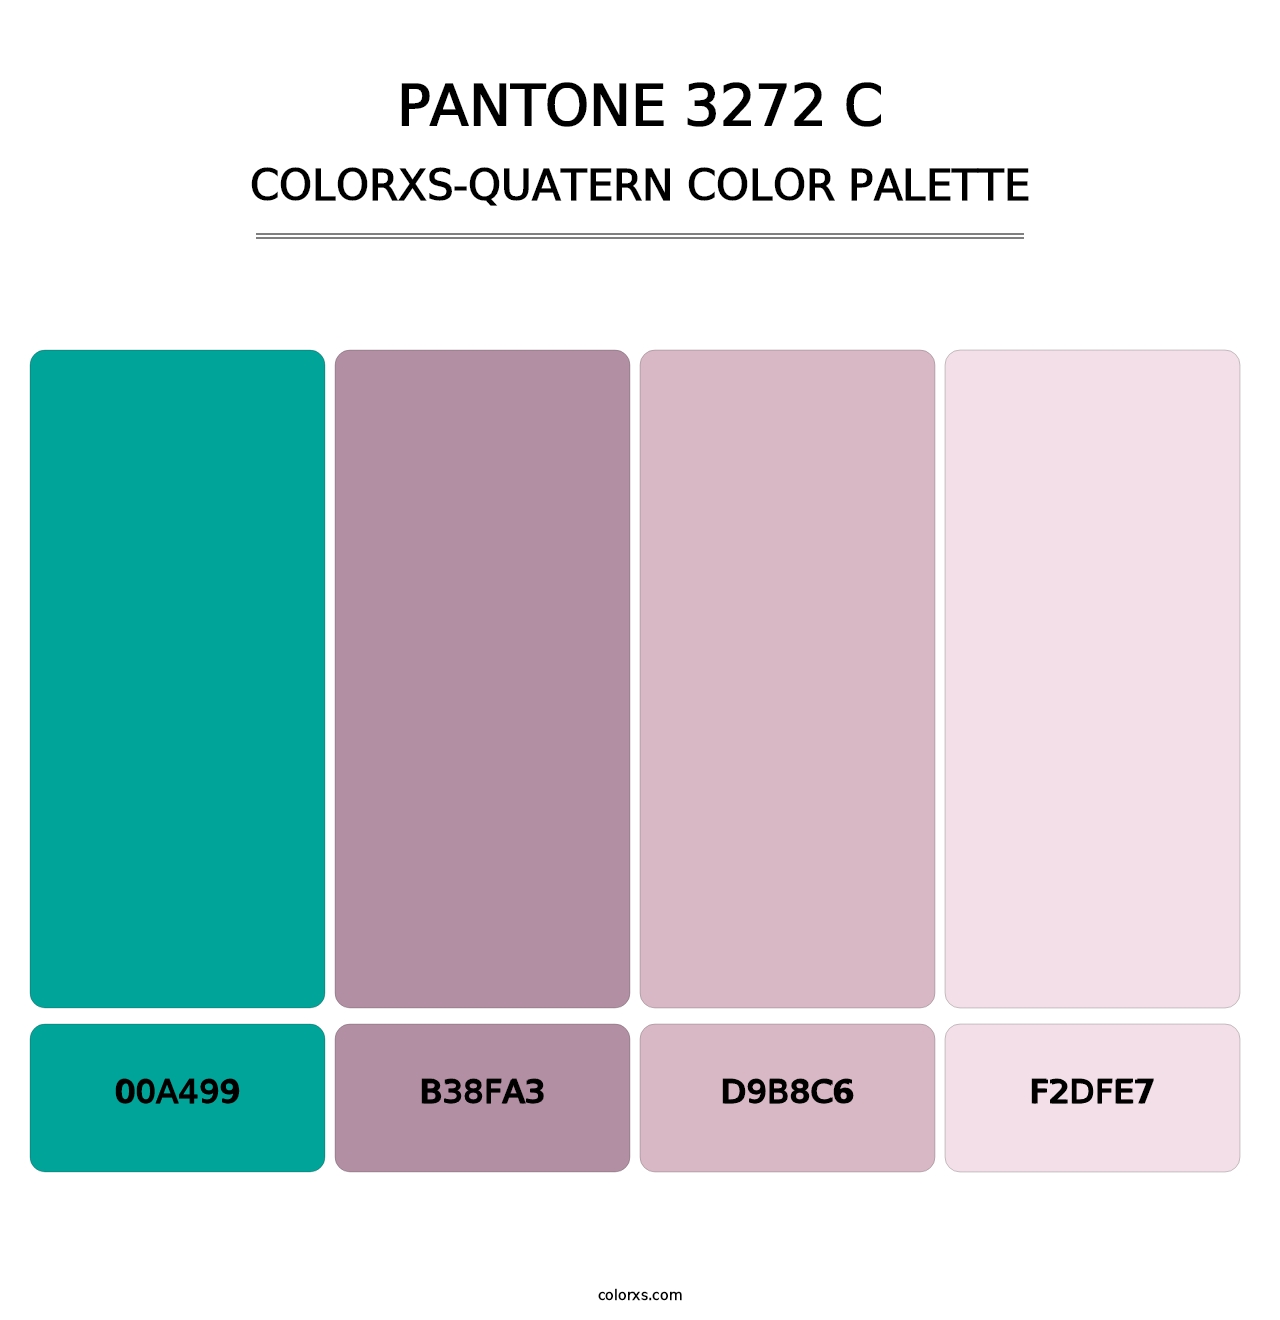 PANTONE 3272 C - Colorxs Quatern Palette